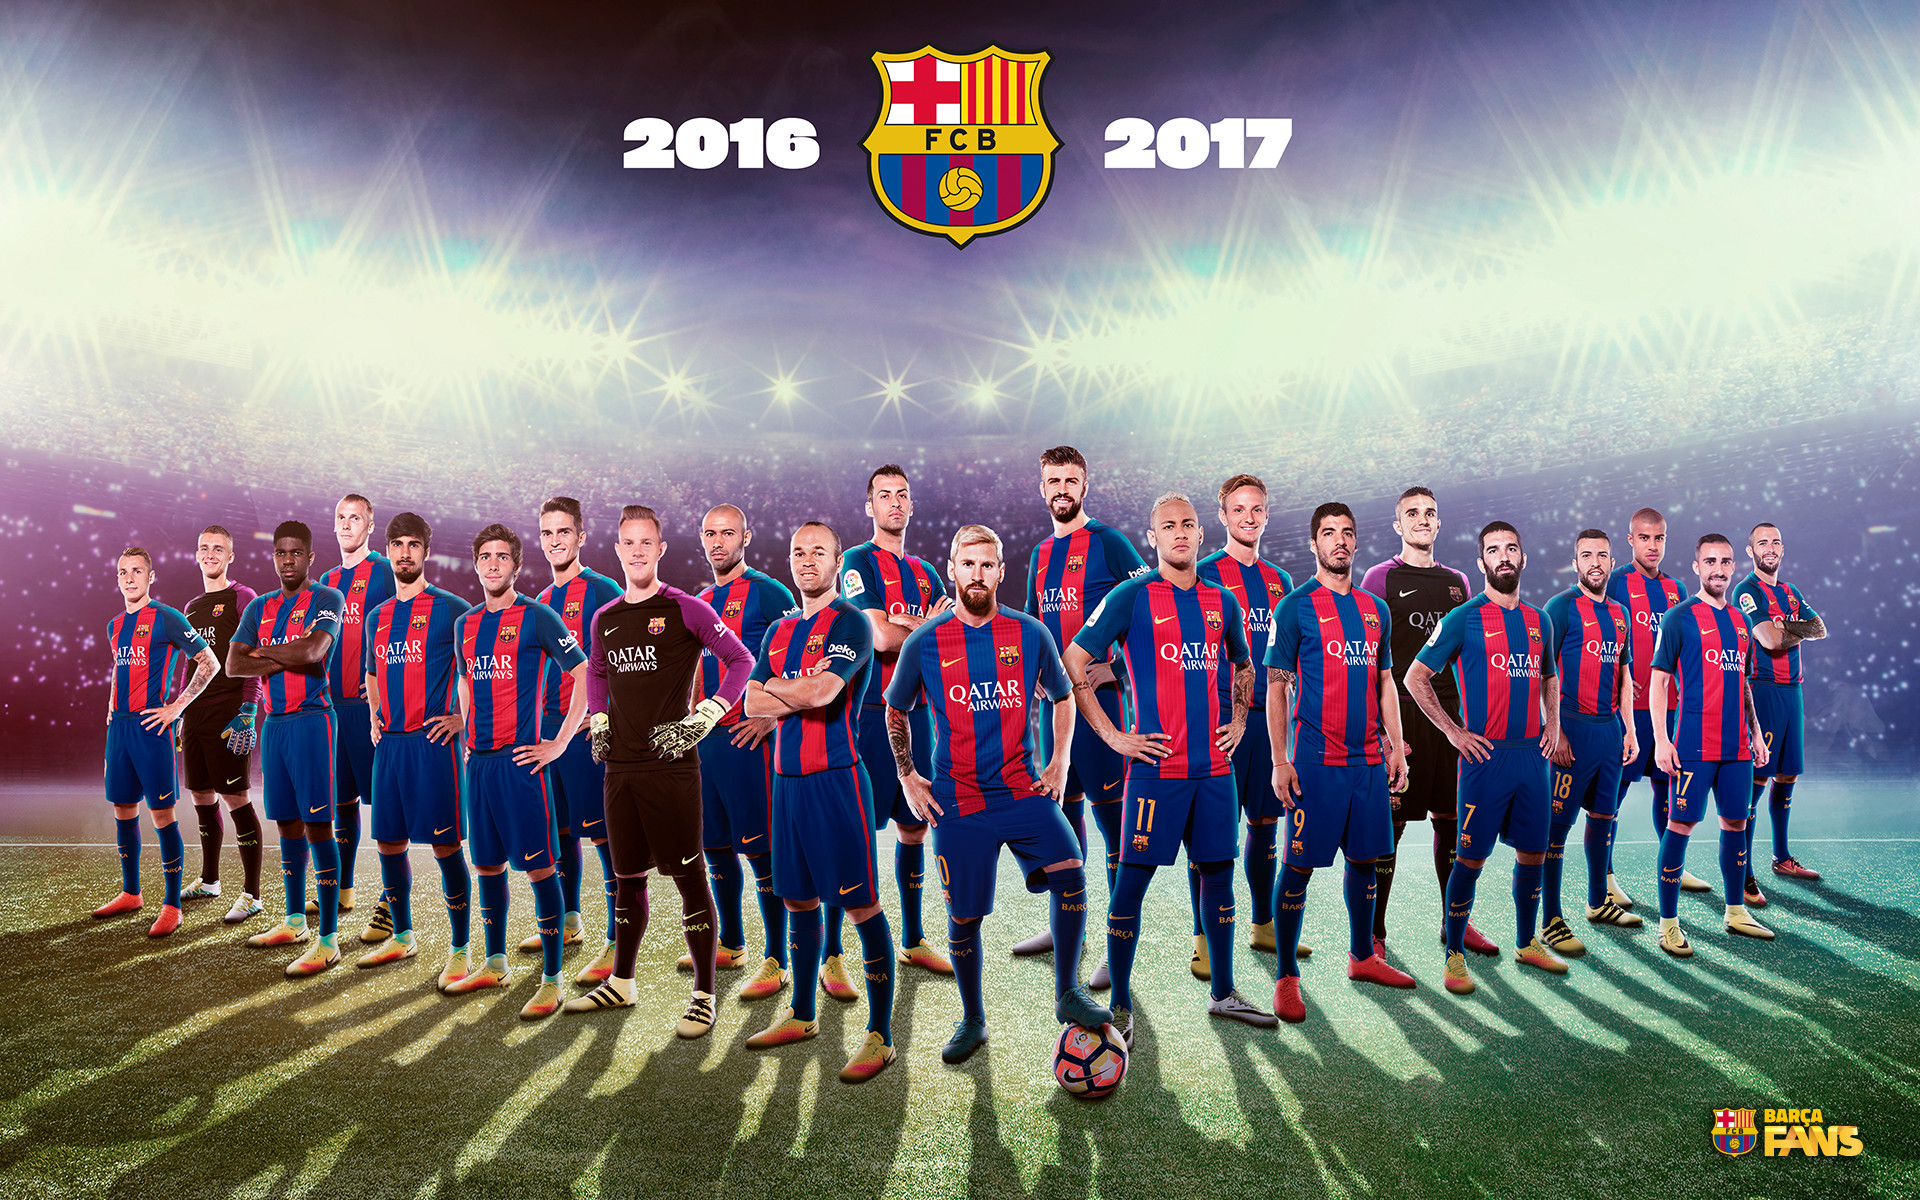 壁紙fcバルセロナ2017,チーム,プレーヤー,サッカー選手,サッカー選手,チャンピオンシップ